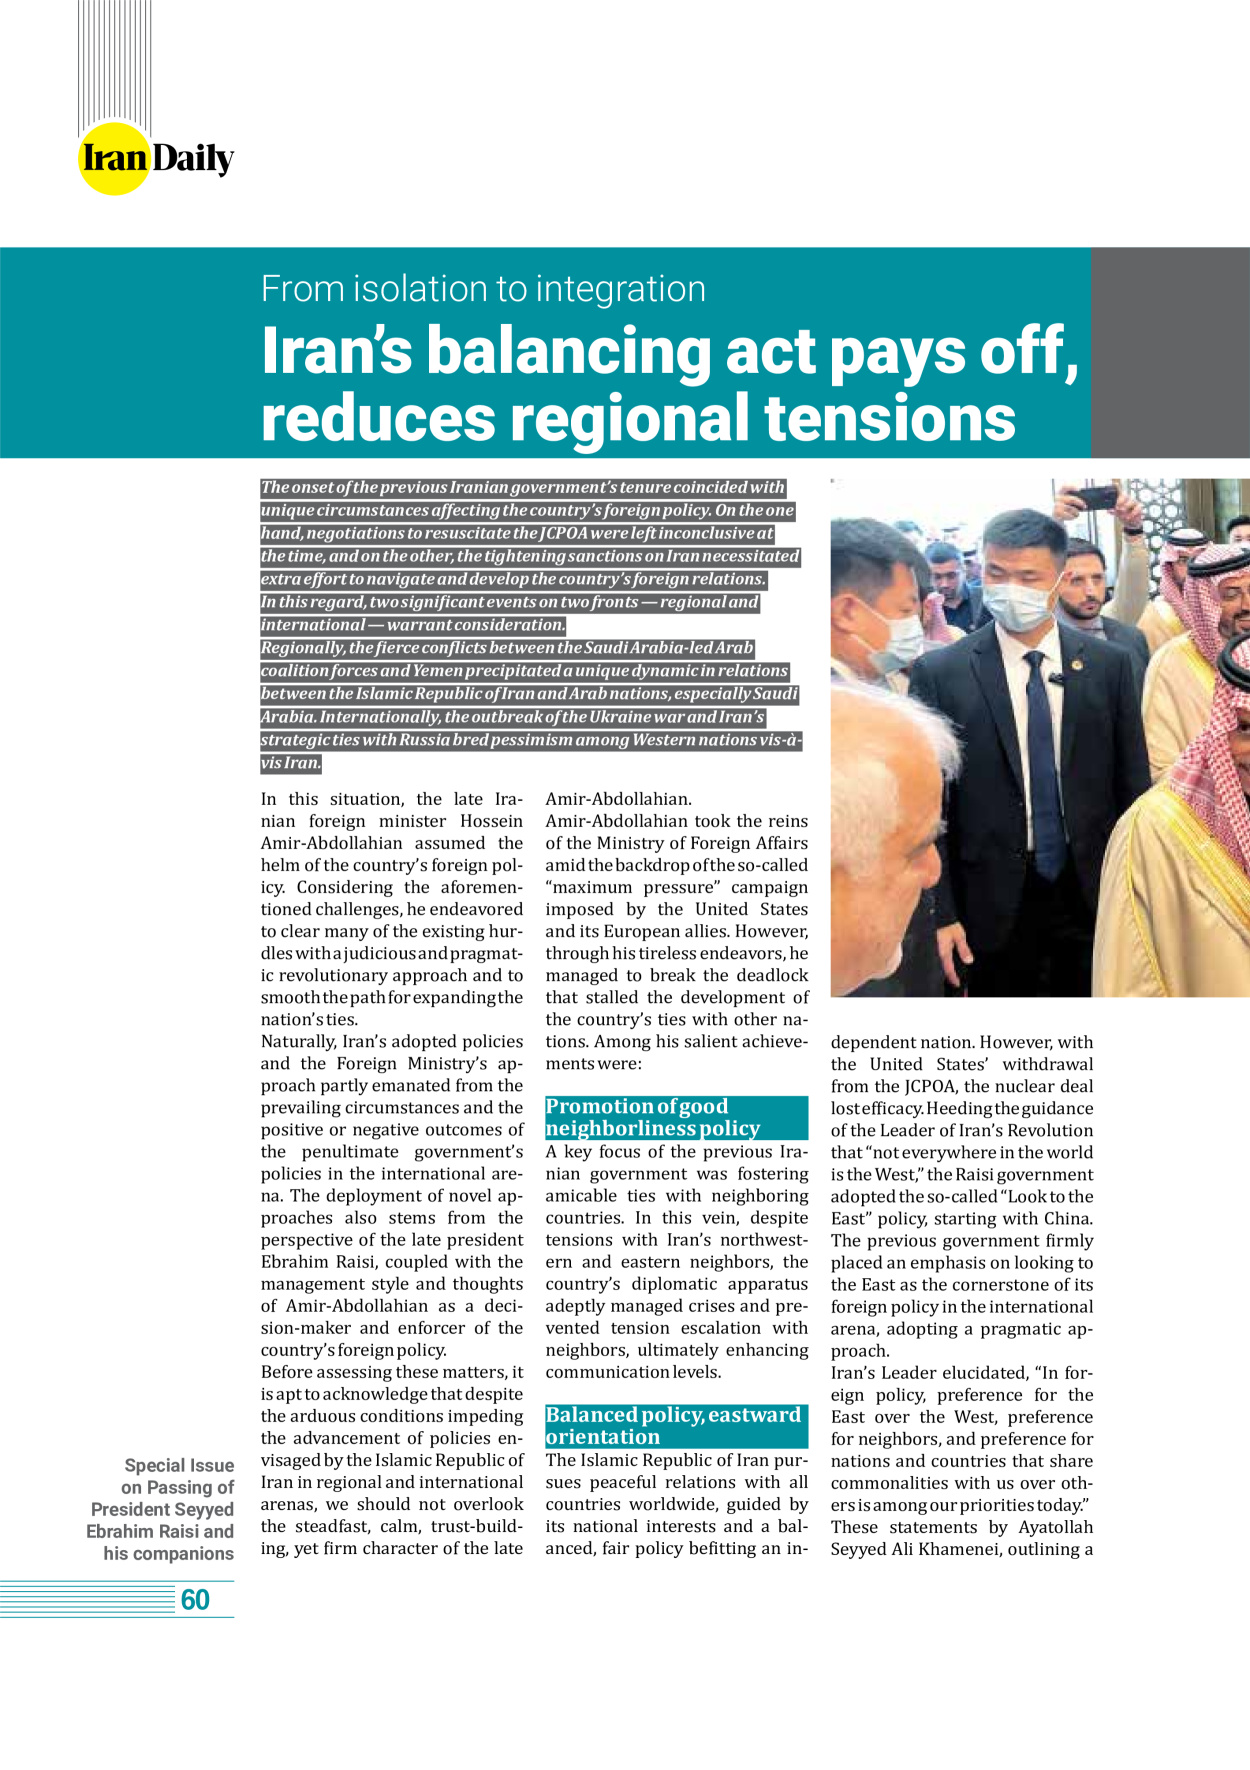 روزنامه ایران - ویژه نامه وِزه نامه چهلم شهید رییسی( انگلیسی) - ۱۷ تیر ۱۴۰۳ - صفحه ۶۰